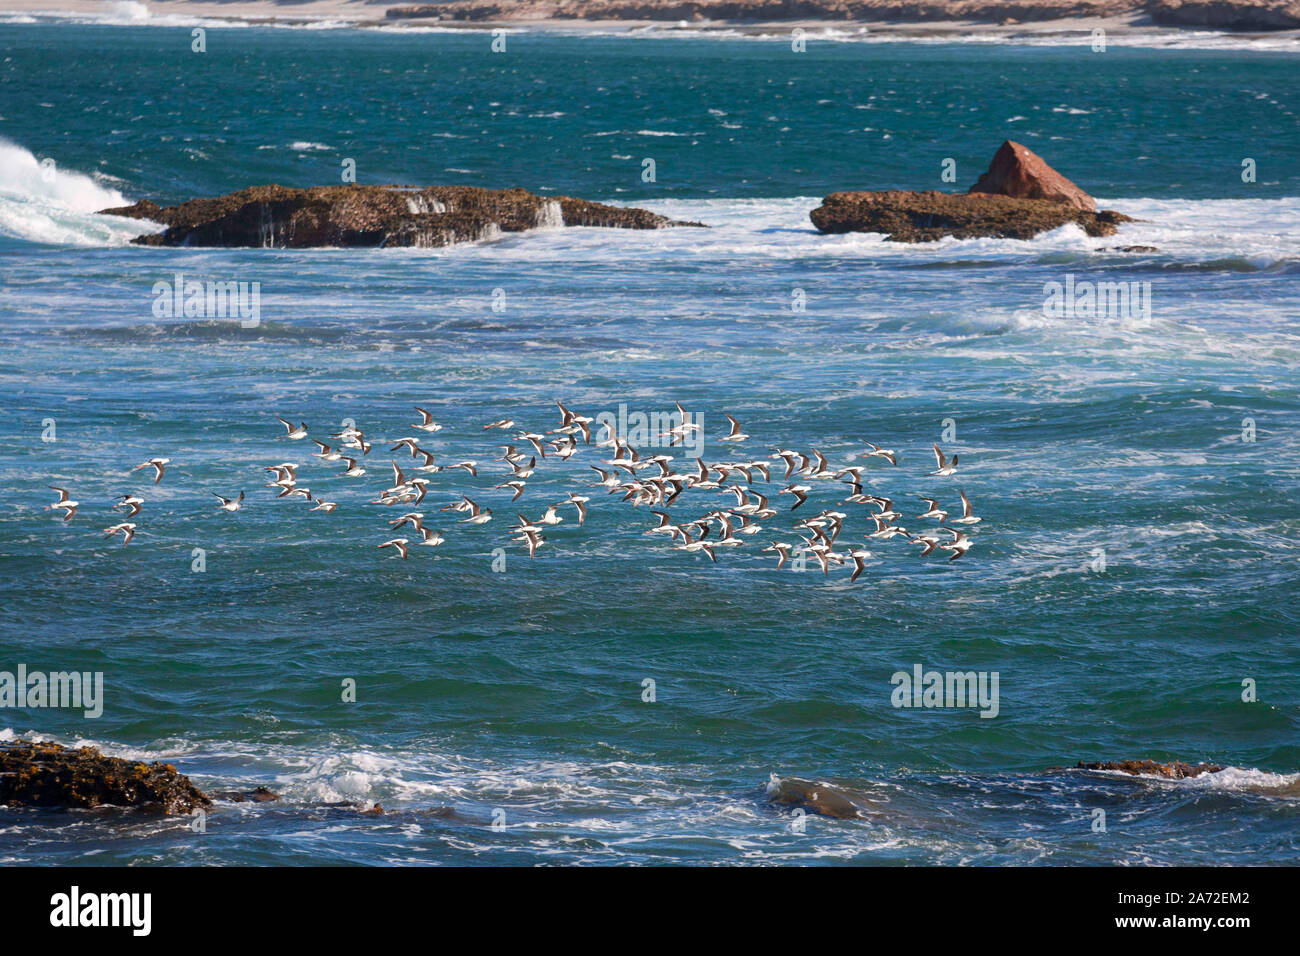 Flock of seabirds flying over ocean, Kalbarri  Western Australia Stock Photo